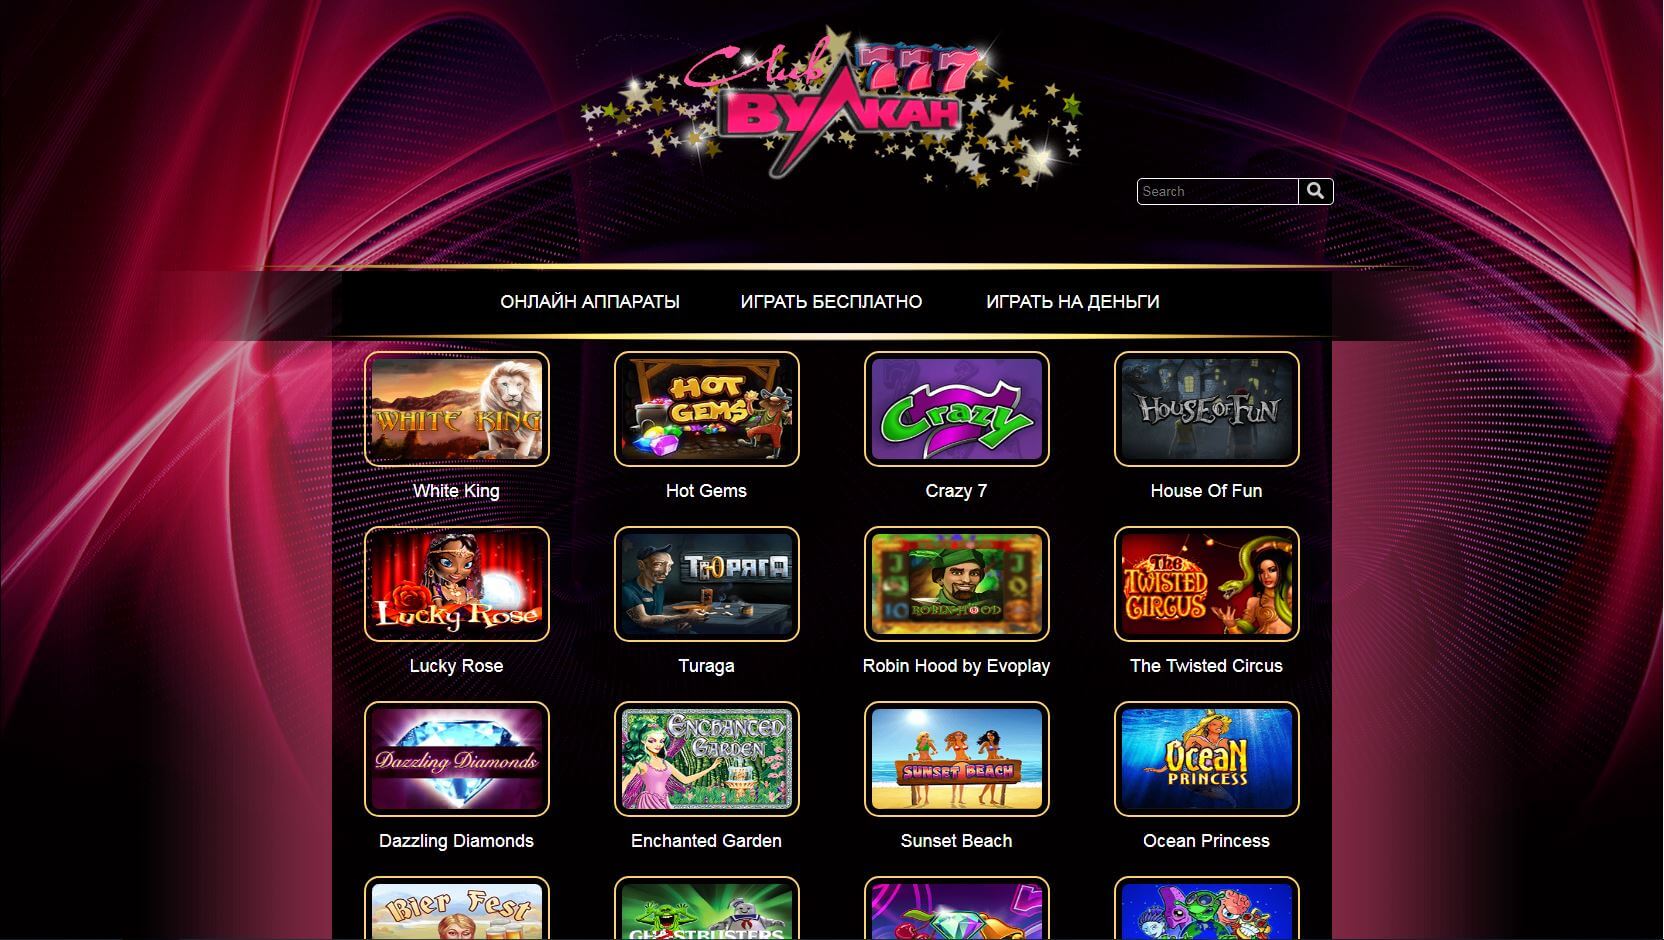 Игровые автоматы 777 бесплатно 777 casino vulcan net гейша игровые автоматы